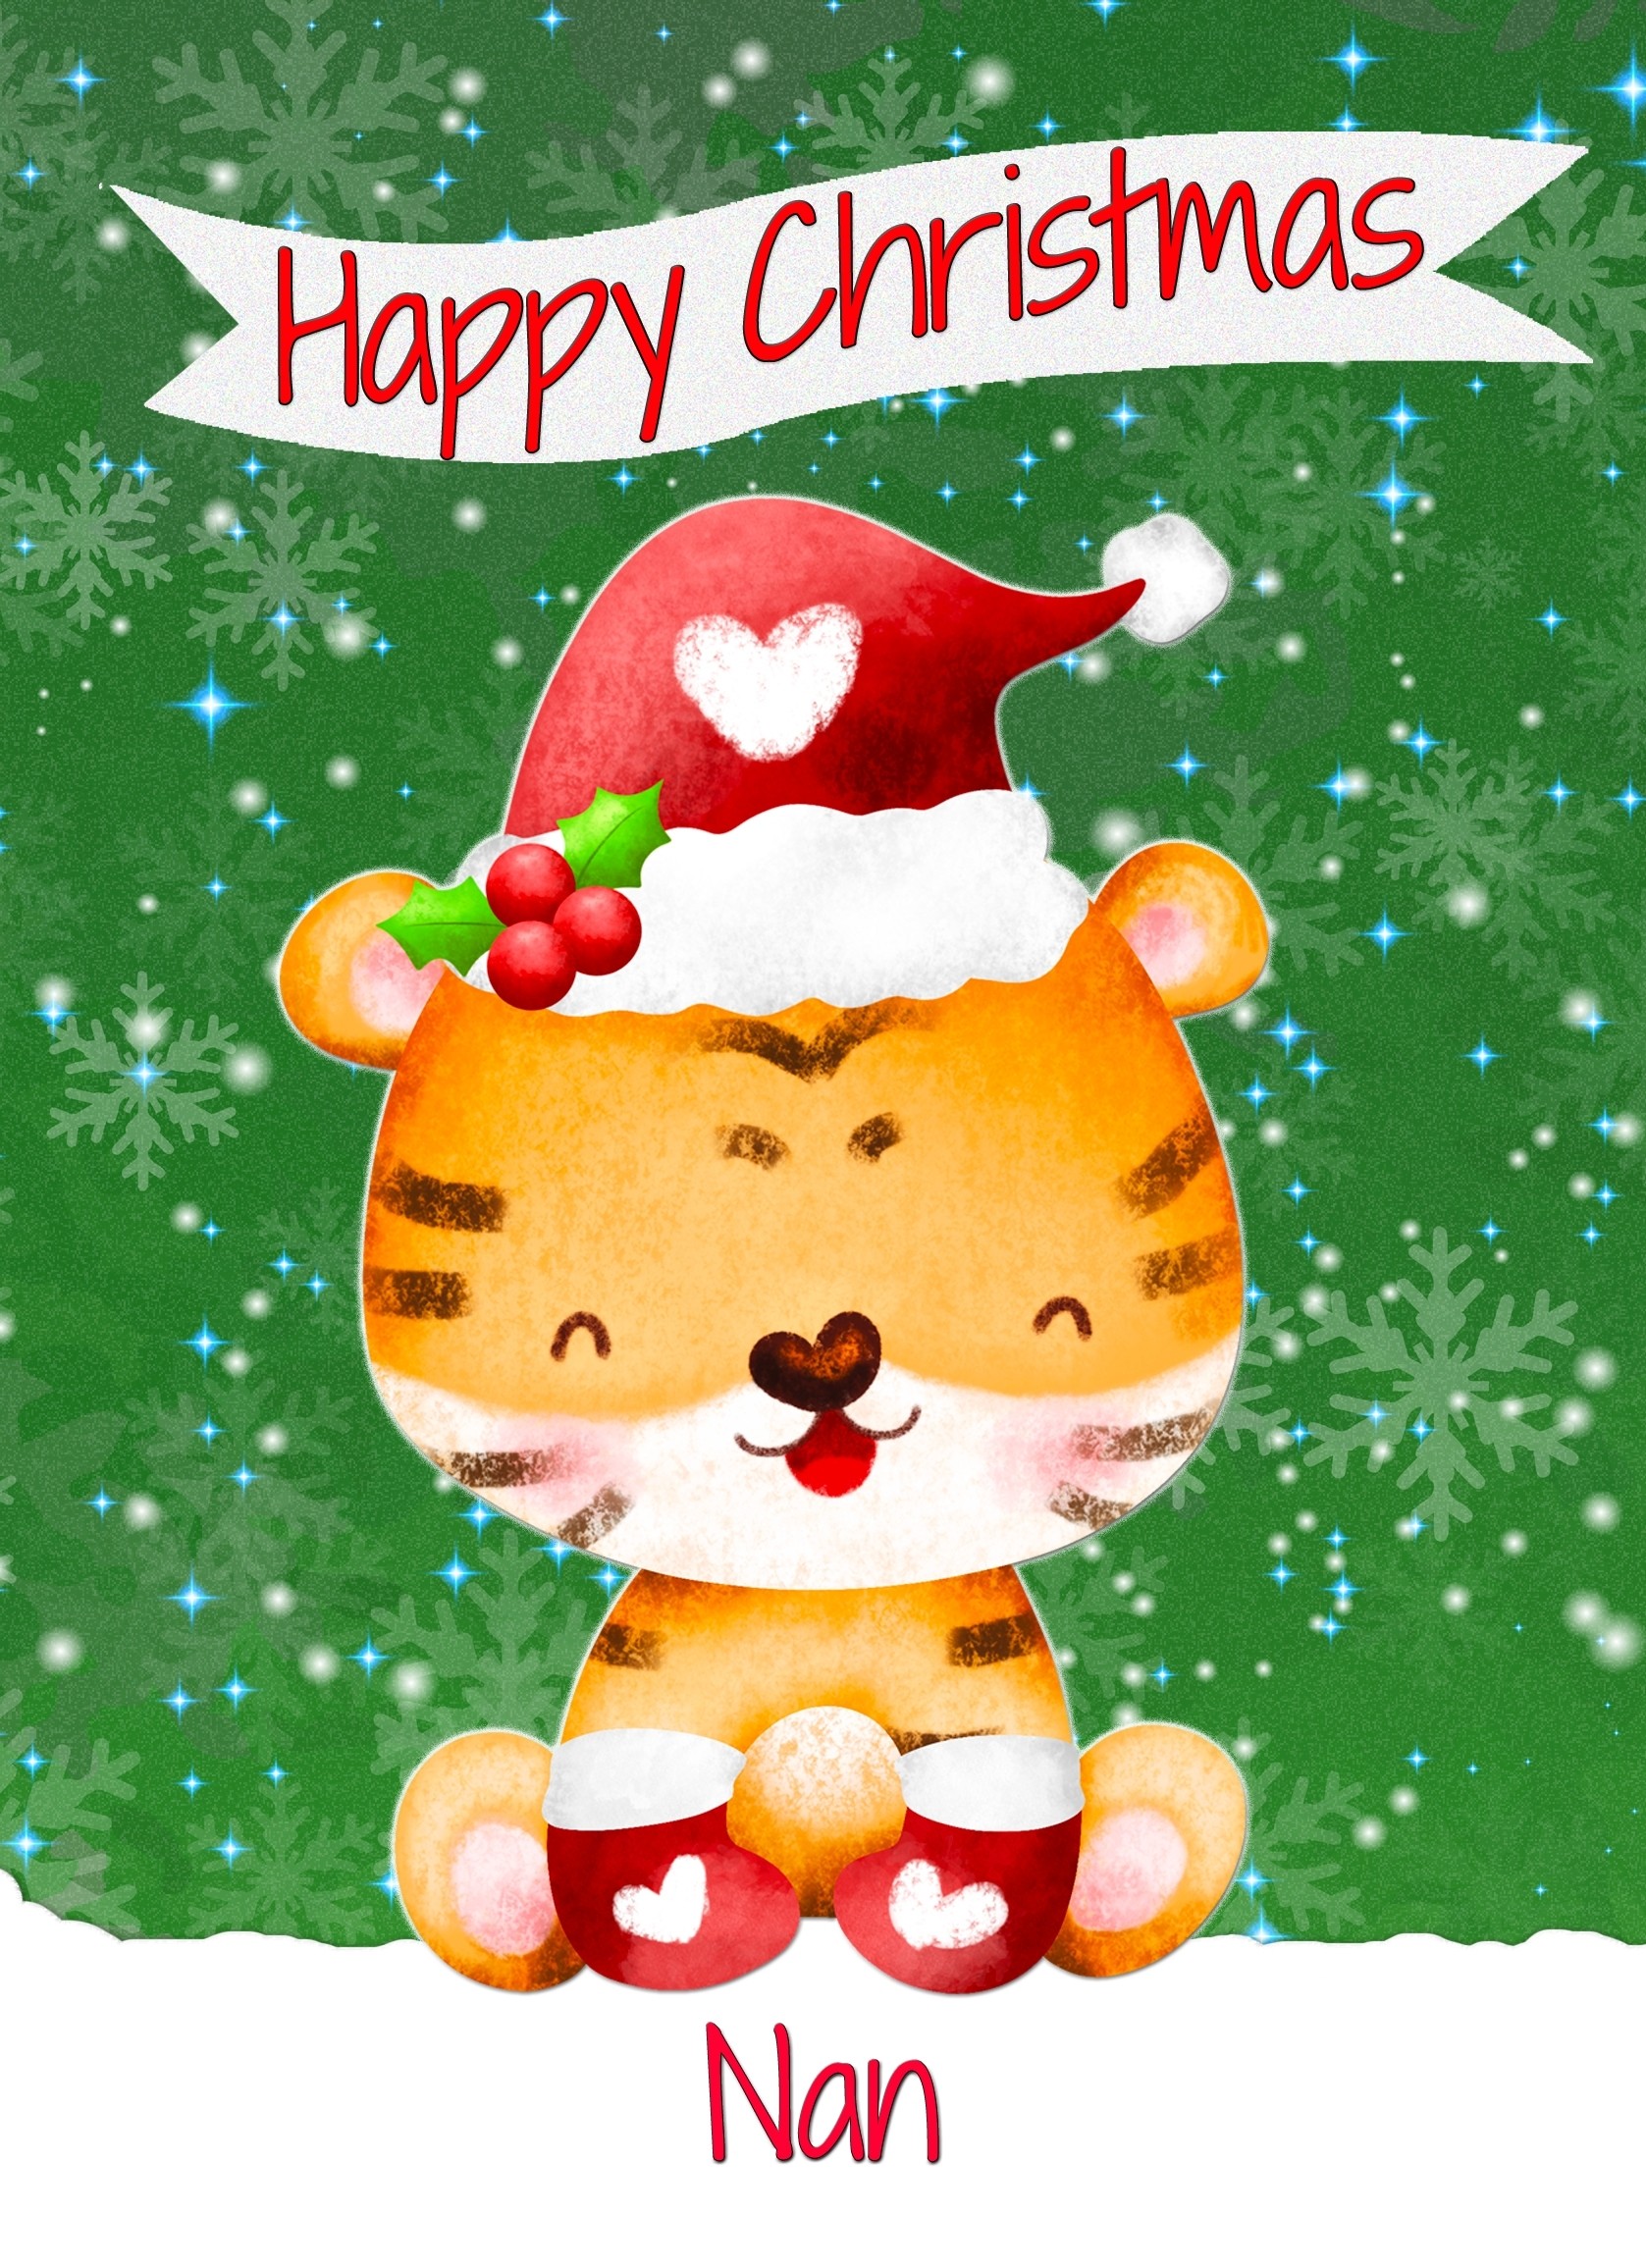 Christmas Card For Nan (Happy Christmas, Tiger)